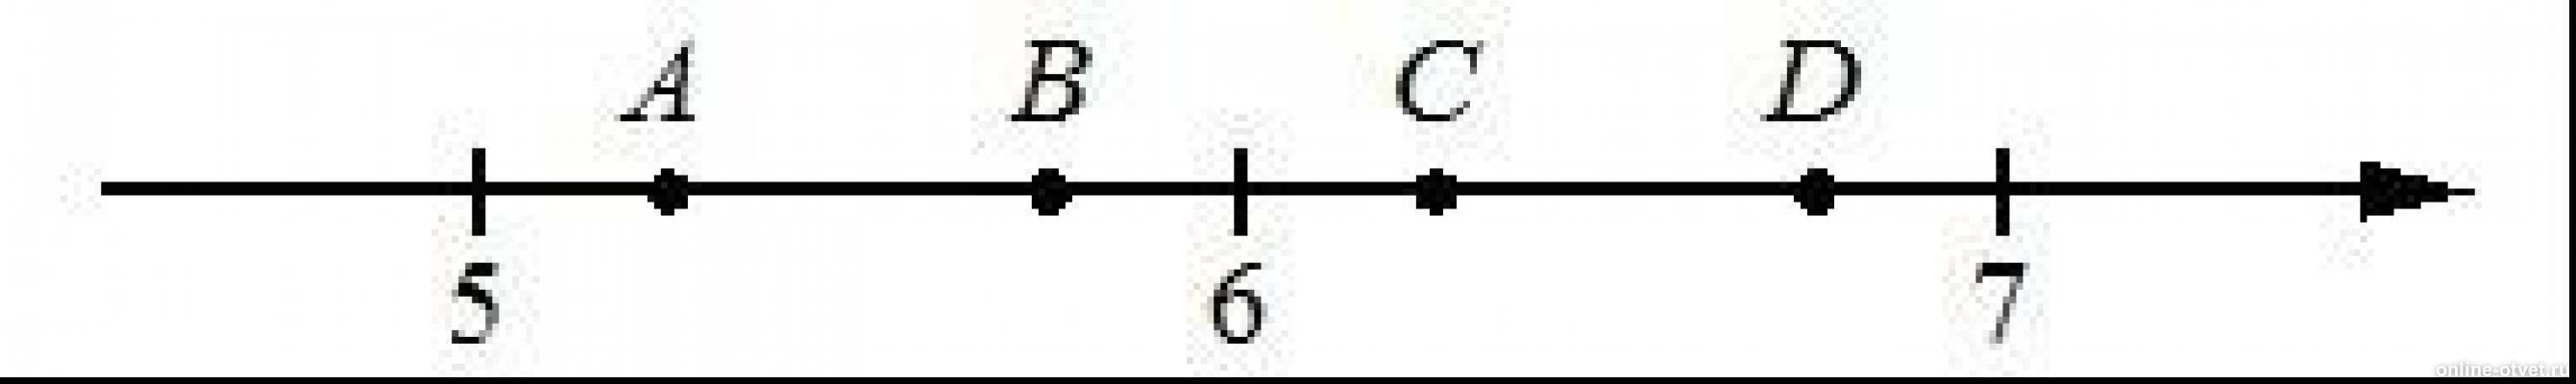 А2 3 21. На координатной прямой отмечены точки а в с д. На координатной прямой отмечены точки a b c d. На координатной прямой отмечены точки c и d ( см рисунок 61). Отметьте и подпишите на координатной прямой точки а(-2 2/11).